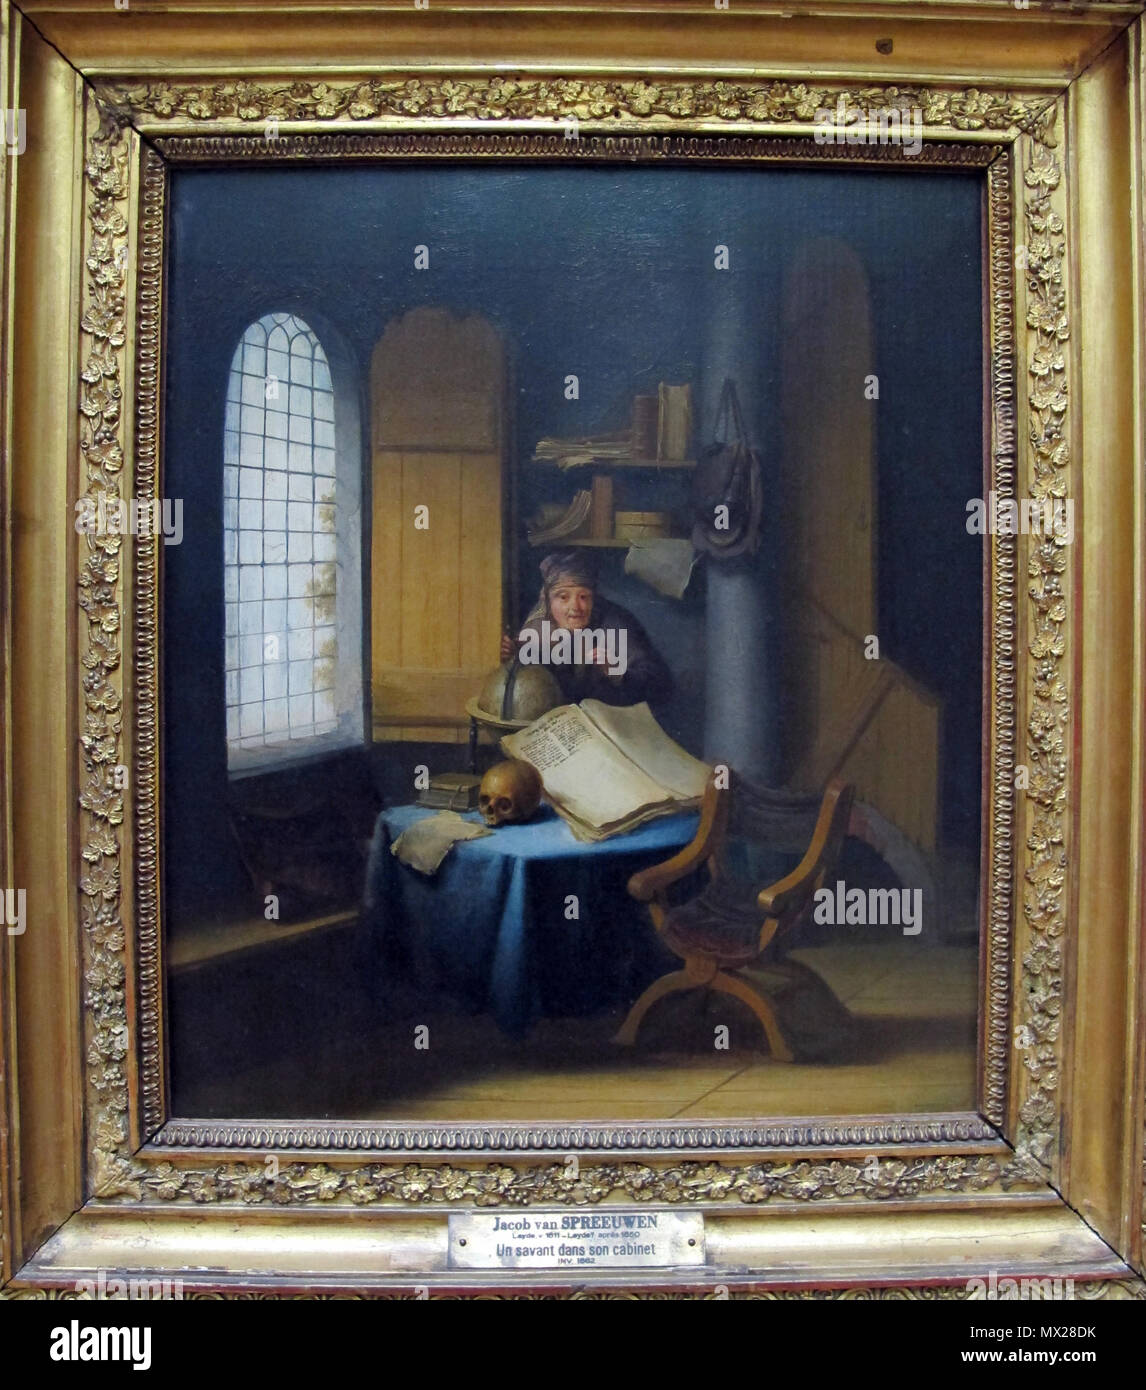 305 Jacob van spreeuwen, uno scienziato nel suo studio con lezione di vanità, 1630 ca. 01 Stock Photo